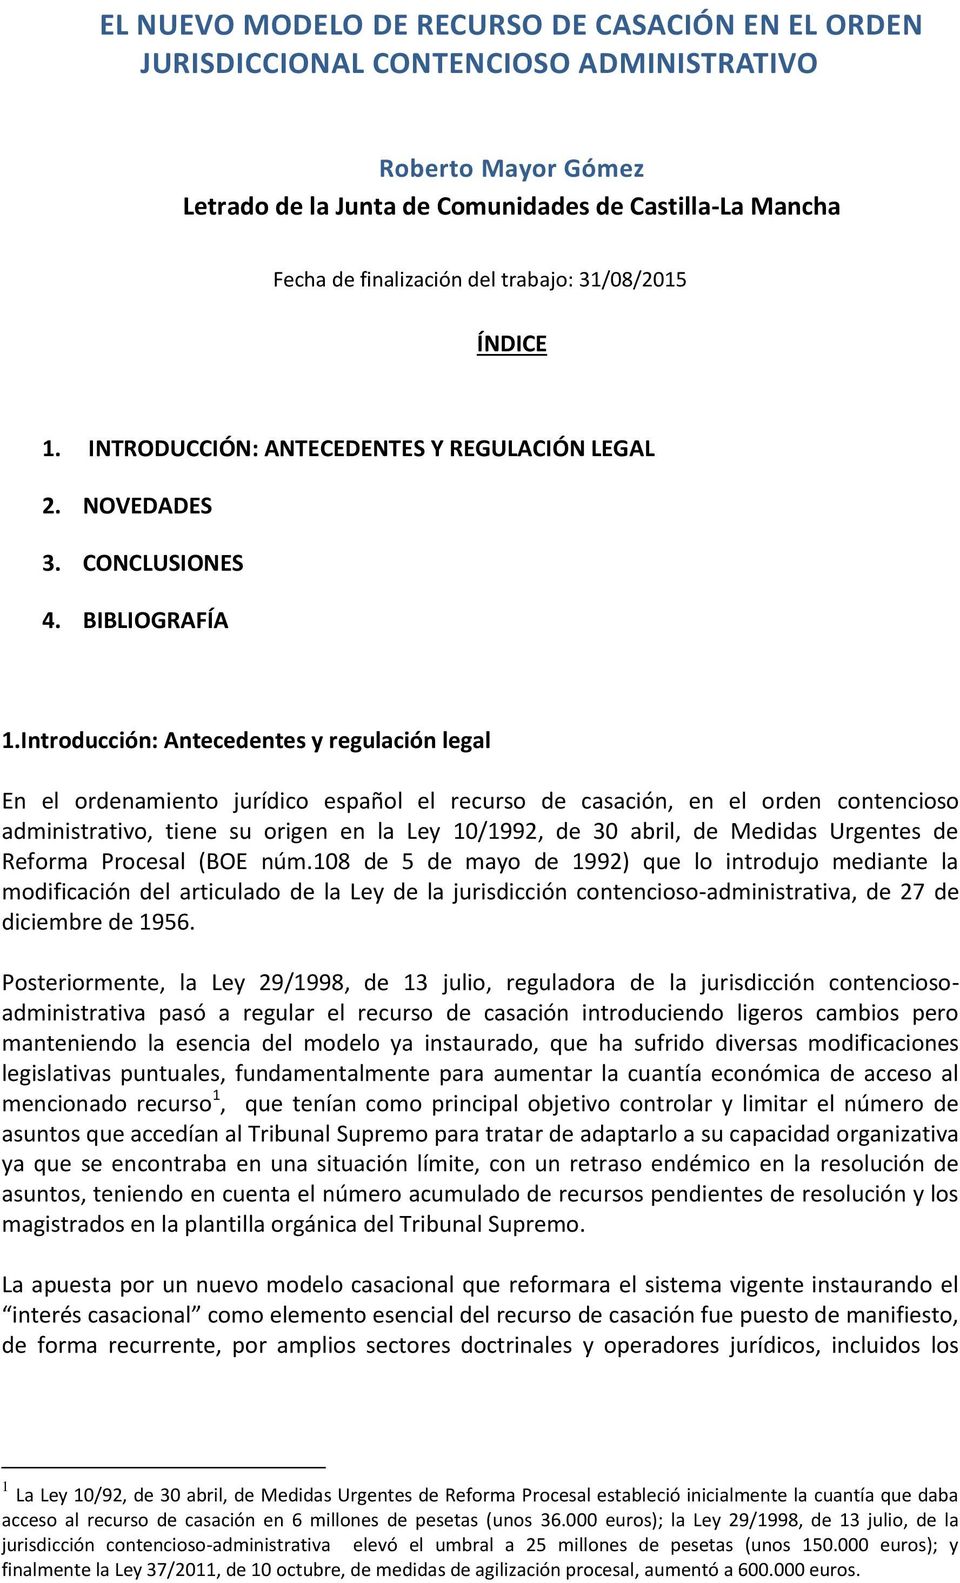 Introducción: Antecedentes y regulación legal En el ordenamiento jurídico español el recurso de casación, en el orden contencioso administrativo, tiene su origen en la Ley 10/1992, de 30 abril, de